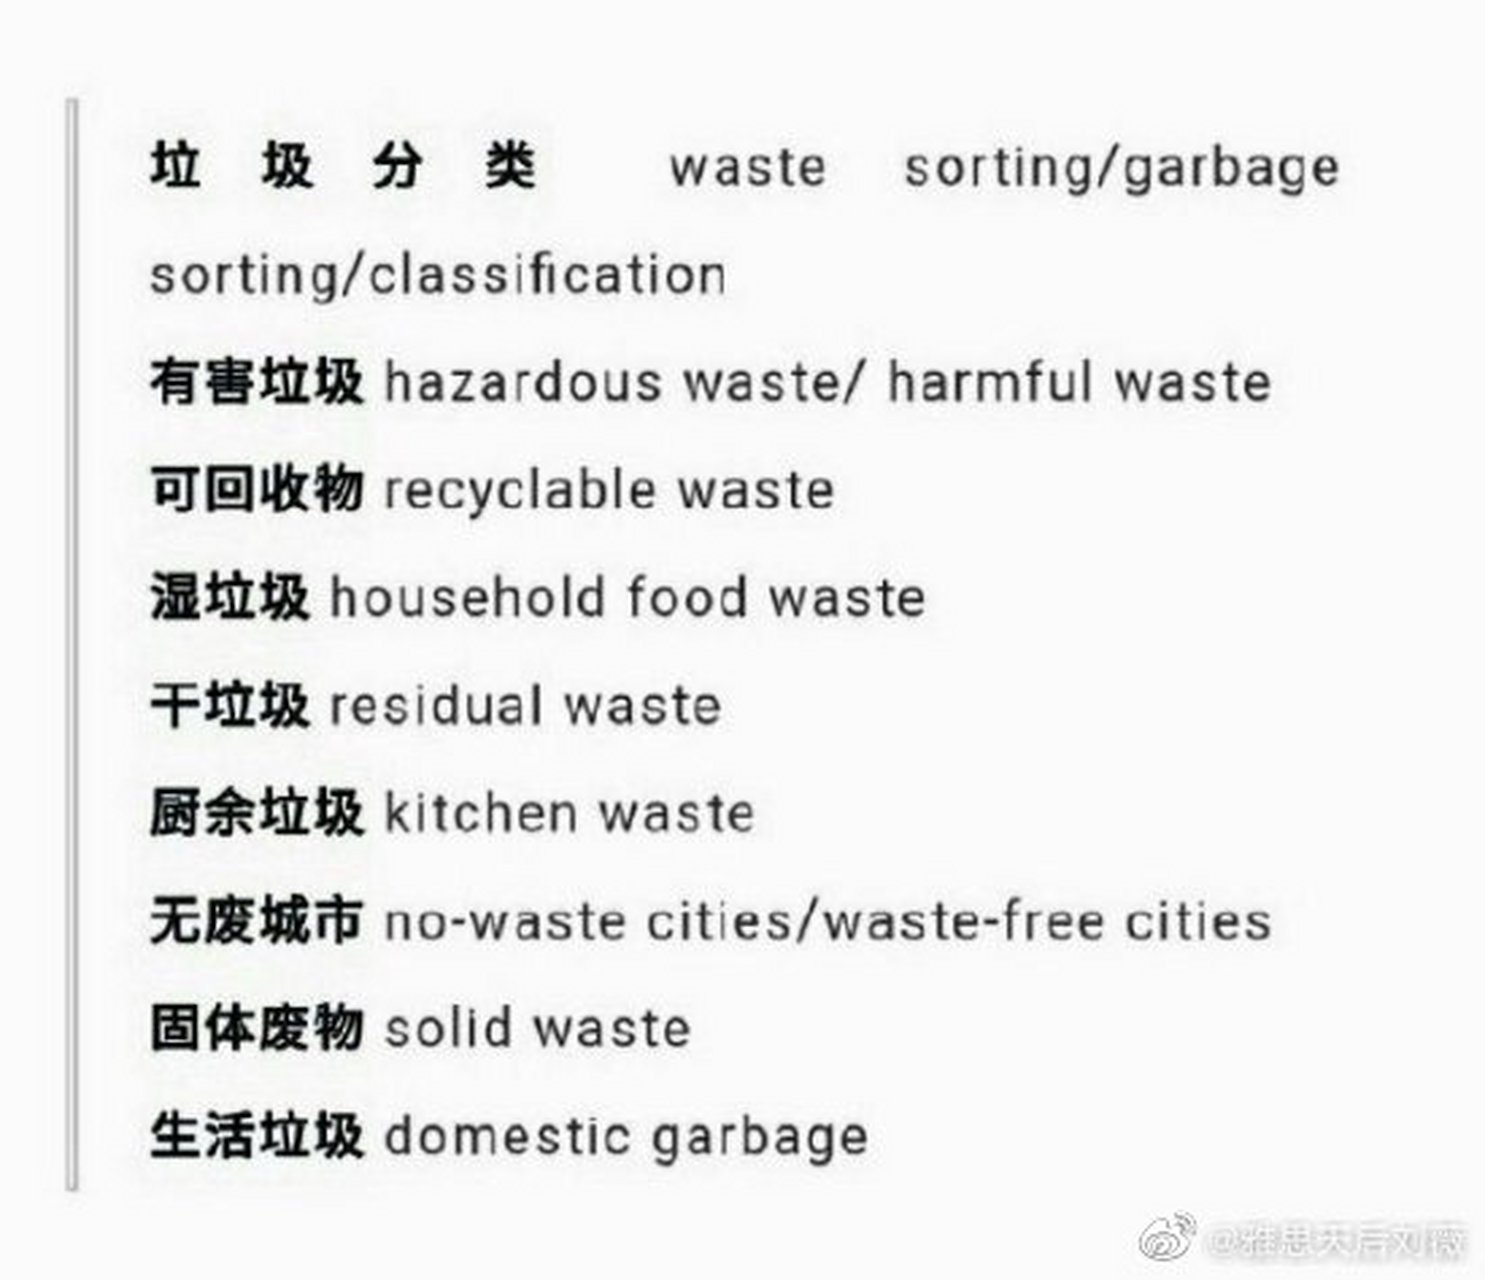 垃圾分类英语词汇, 北京垃圾分类街道乡镇年底前要超九成